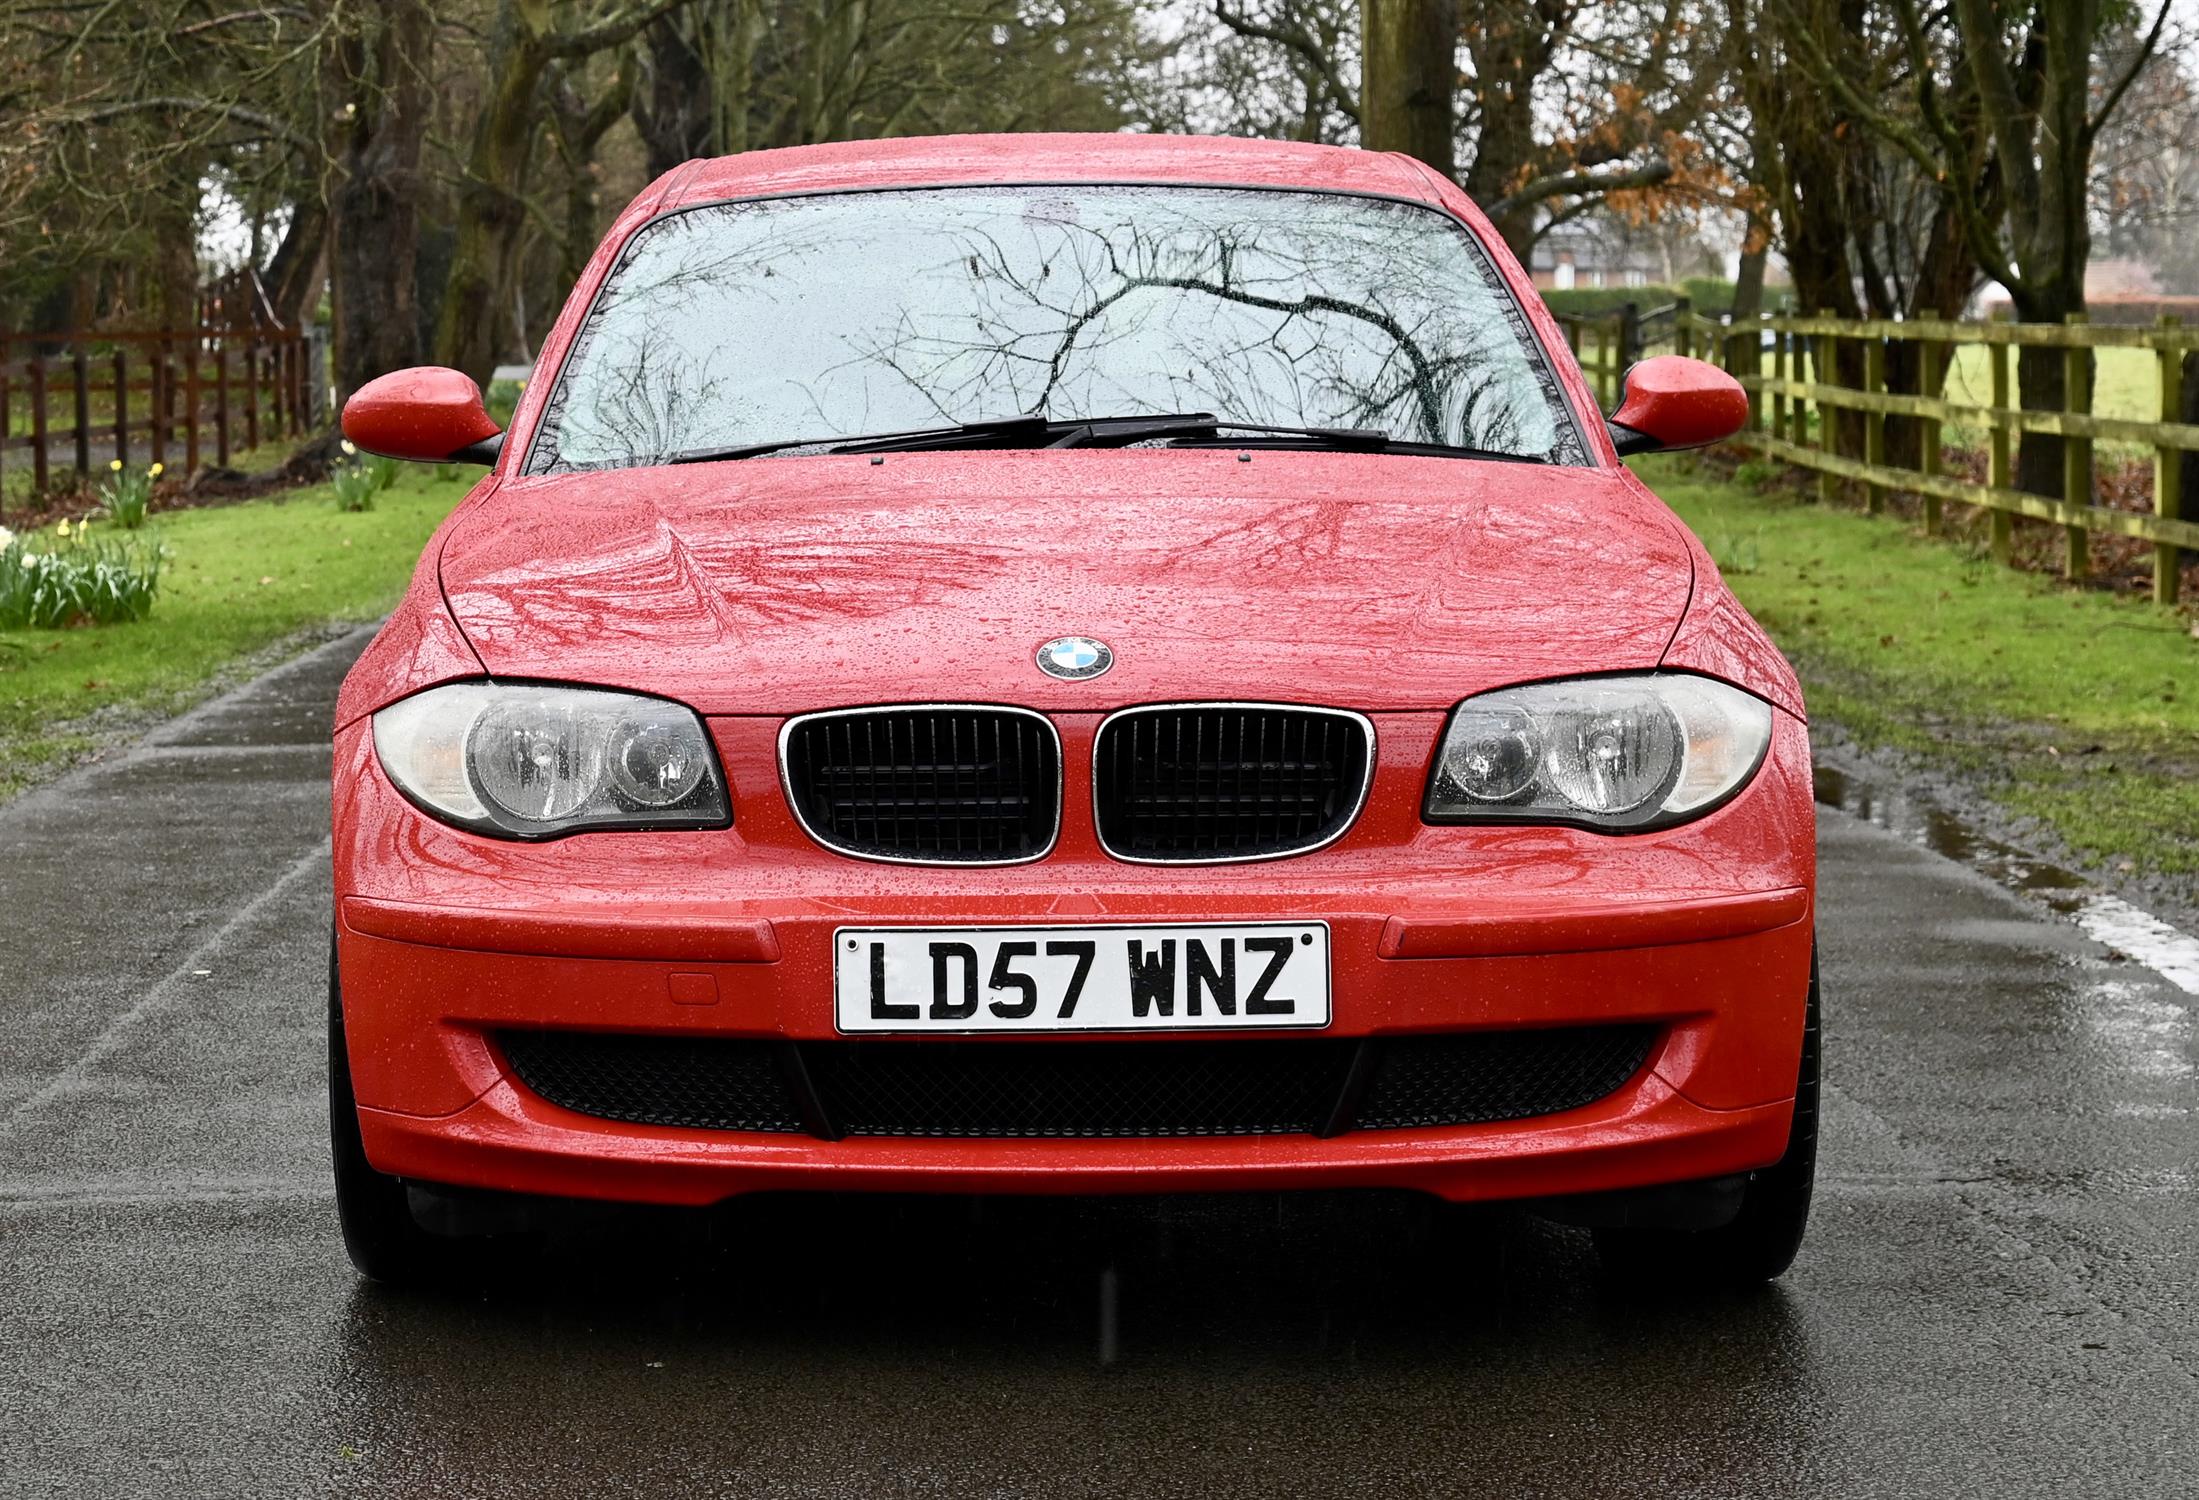 2007 BMW 116i 1597cc Petrol 5 Door Hatchback. Registration number: LD57 WNZ. Mileage: 142,600. - Image 11 of 12